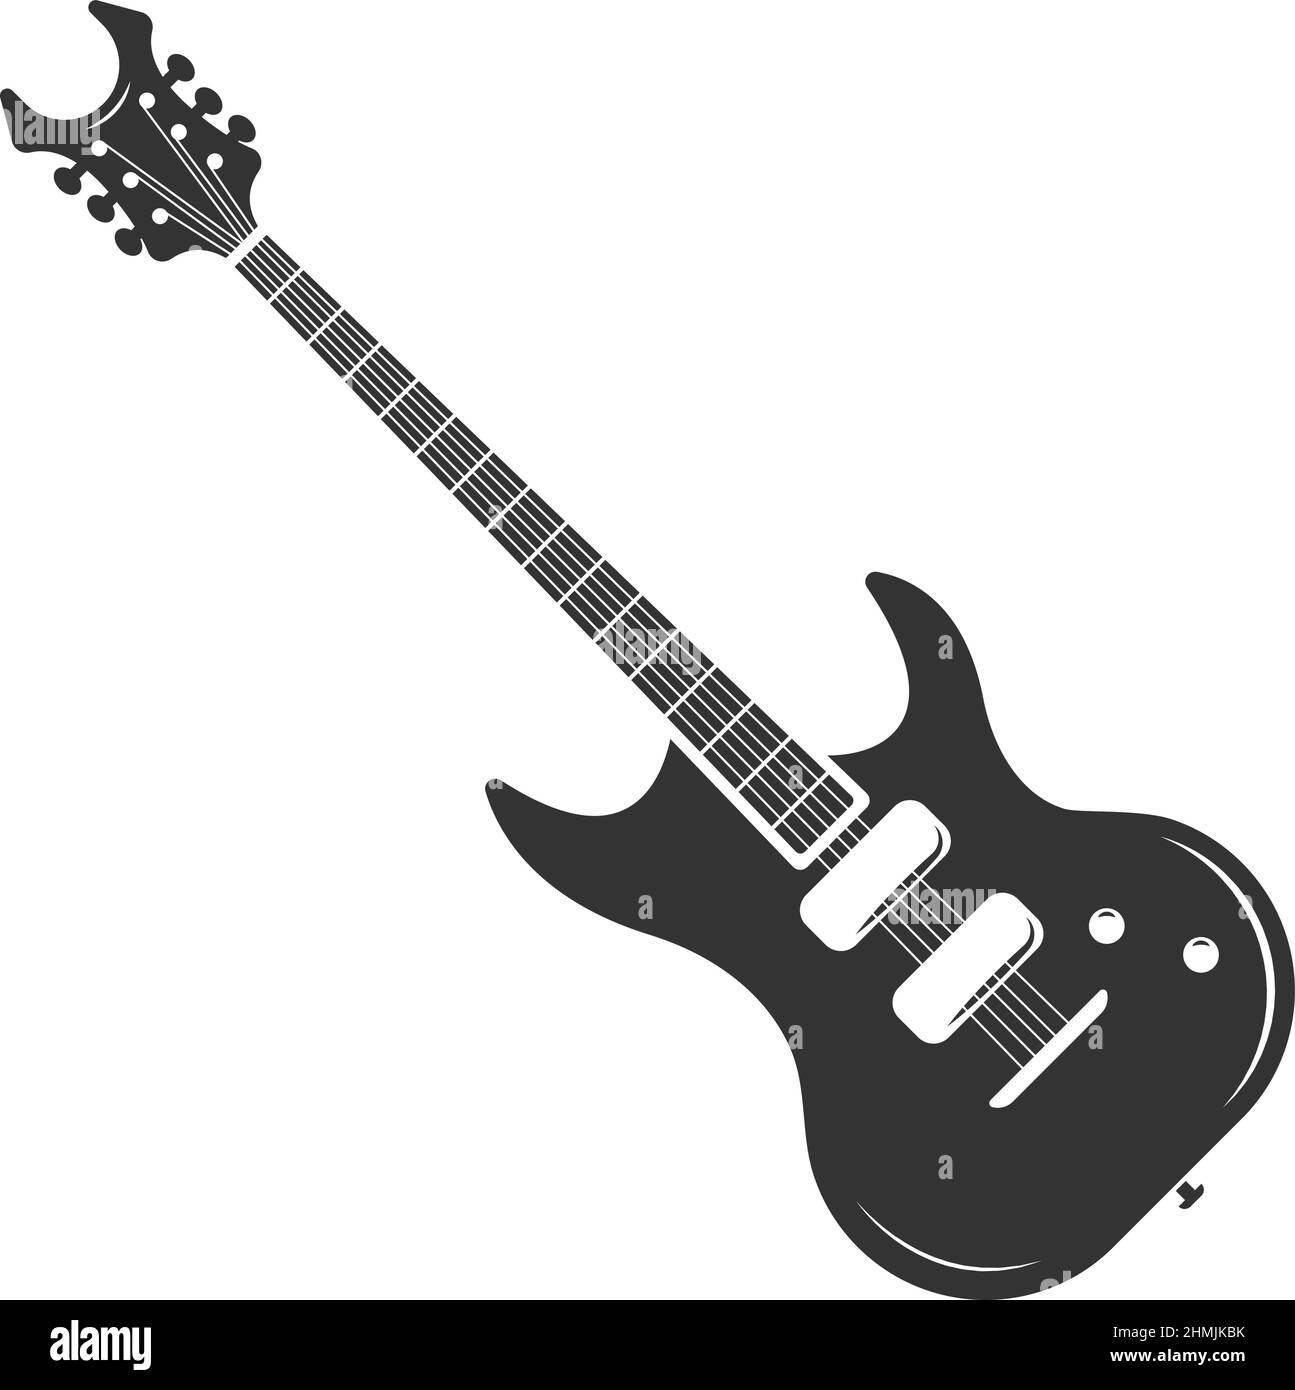 Guitarra eléctrica. Emblema de música rock negro. Señal de la banda Ilustración del Vector